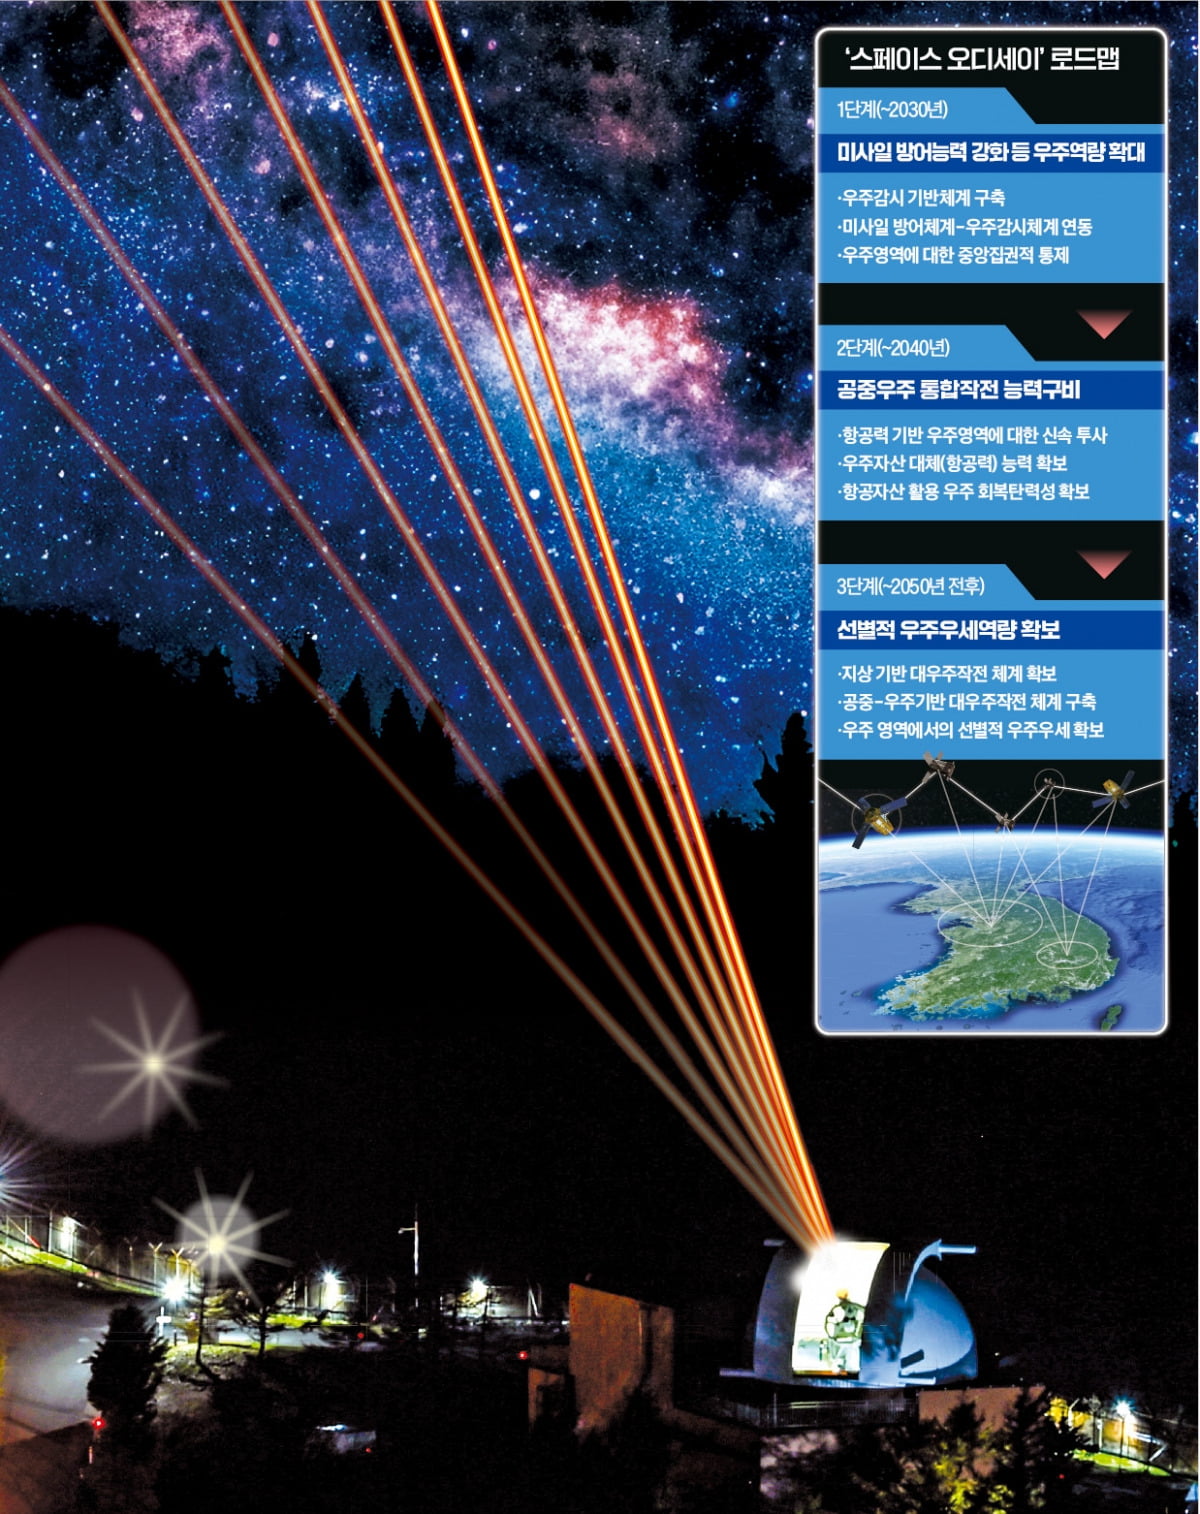 한국 공군의 첫 우주 감시 전력인 ‘전자광학위성감시체계(EOSS)’의 야간 운용 모습. 한반도 상공을 지나는 다른 국가 인공위성 활동 감시, 우주 이상 물체 탐지·추적 등의 임무를 수행한다.  /공군 제공 